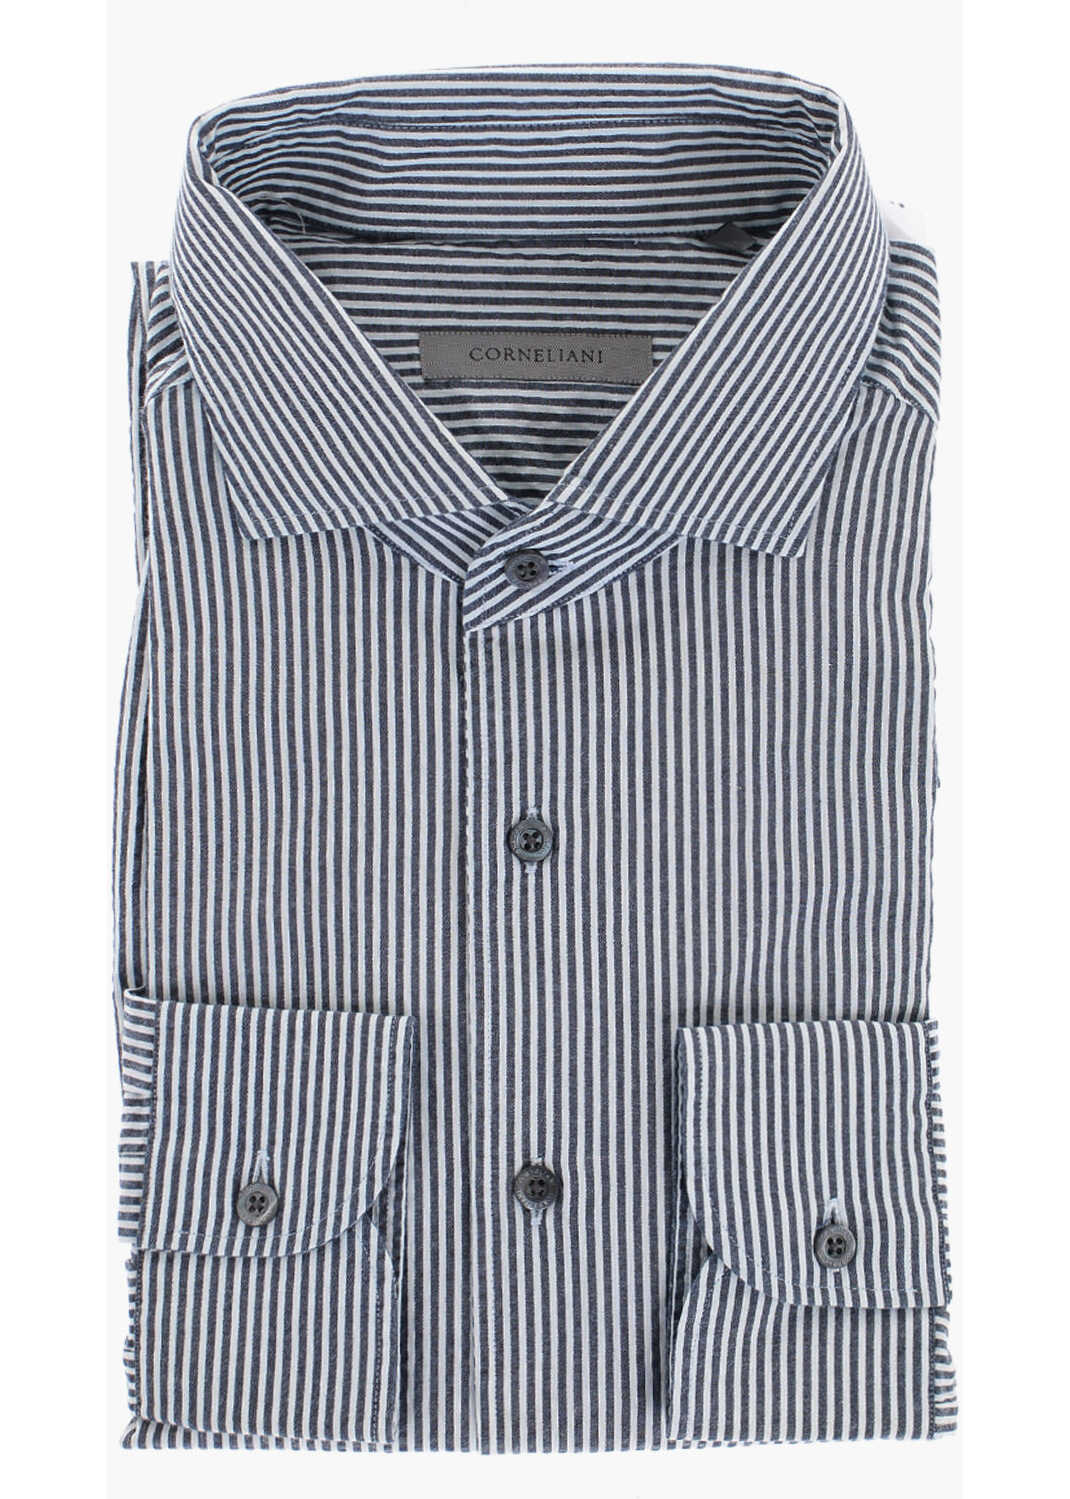 CORNELIANI Awning Stripe Cotton Shirt Blue